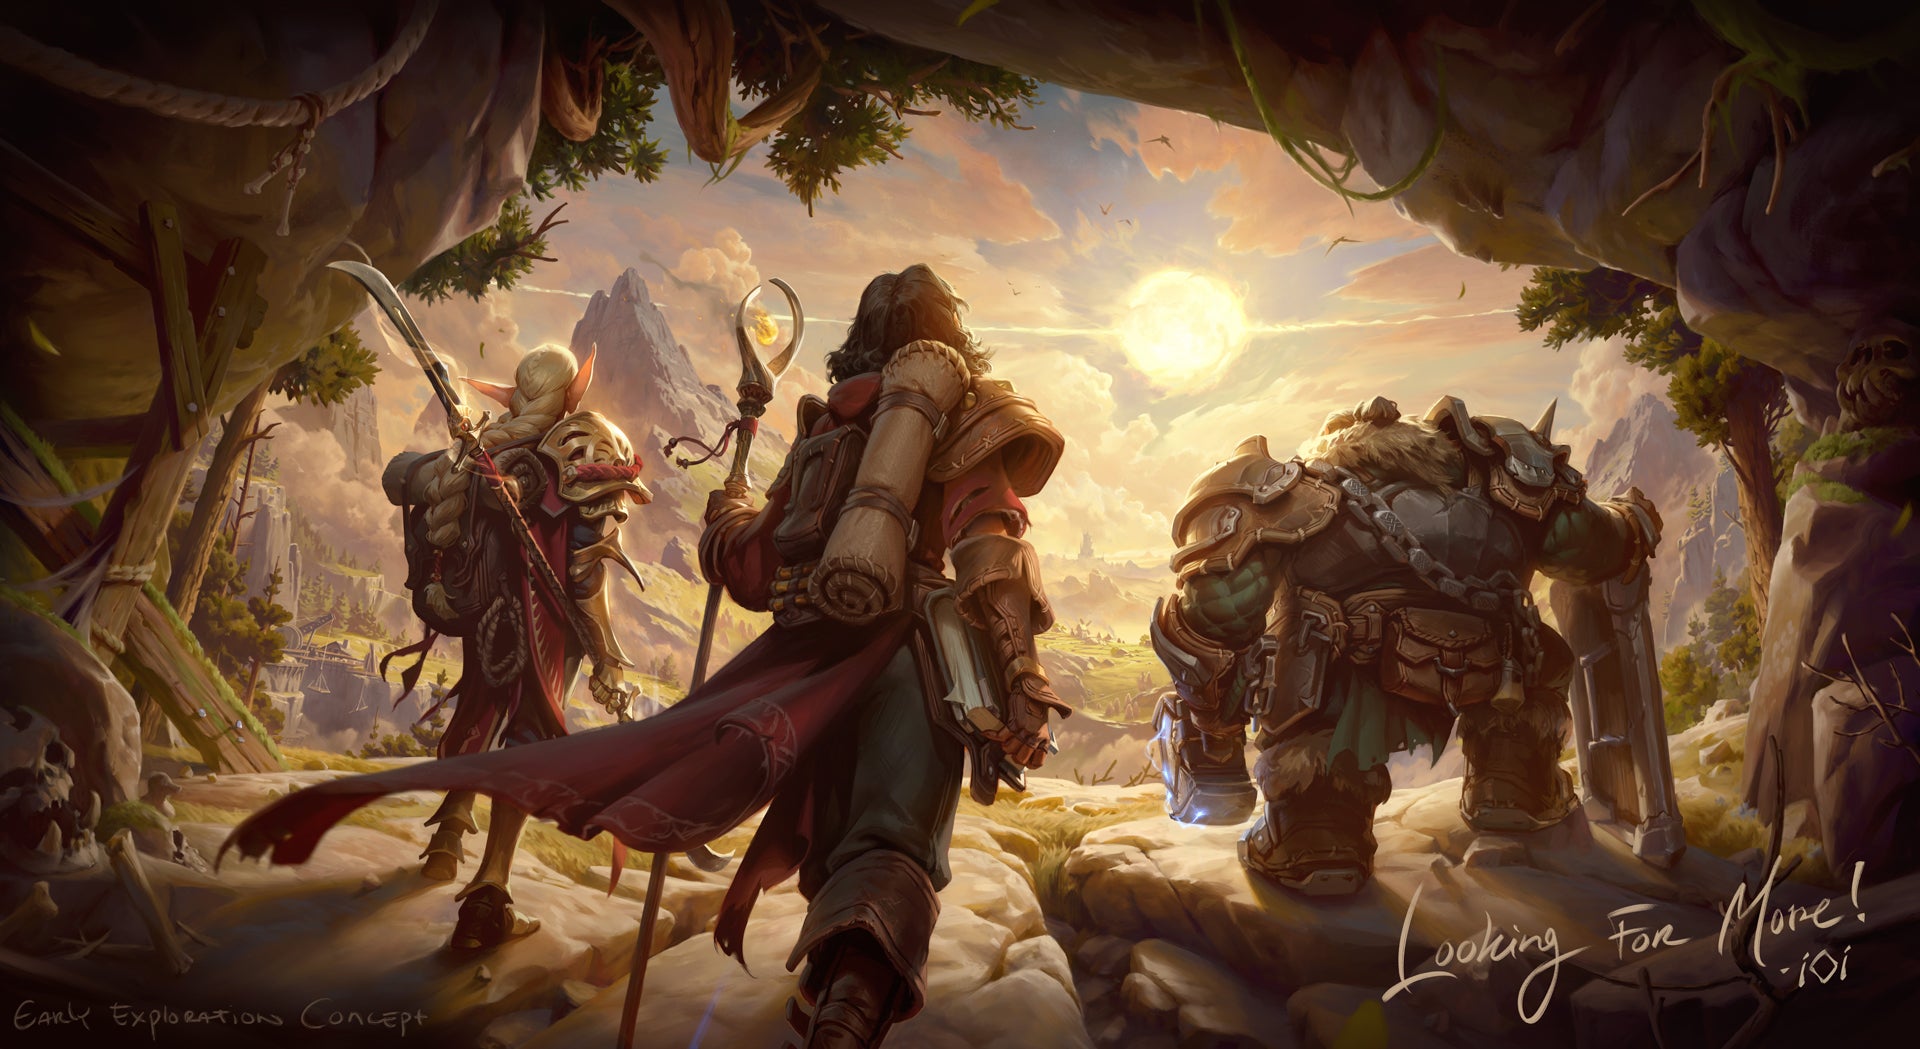 Image for Hitman developer confirms development of "bold new online fantasy RPG"